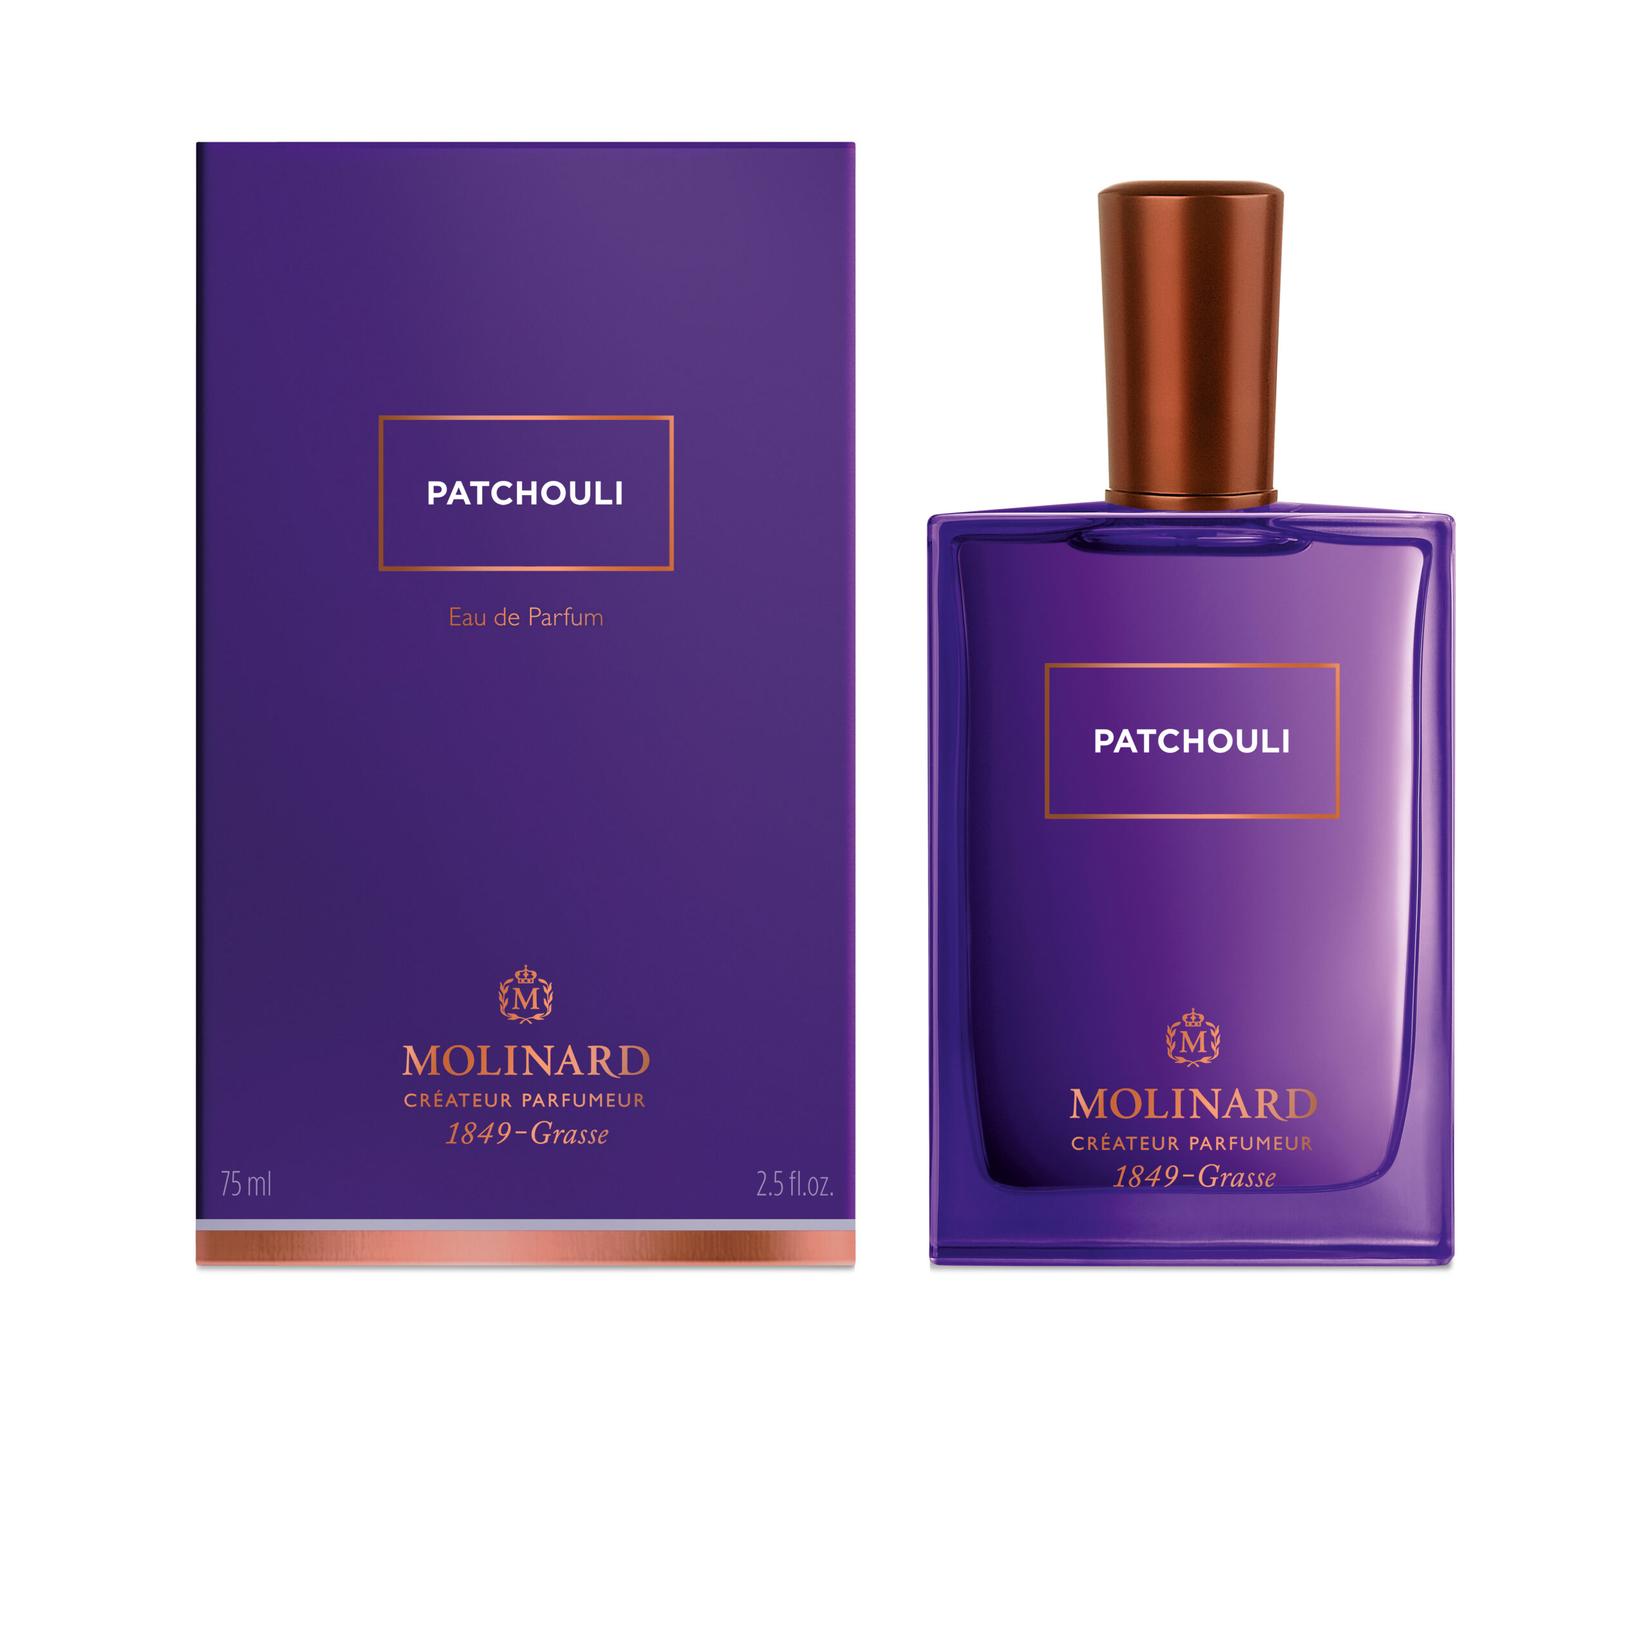 MOLINARD Unisex parfem Patchouli 75ml